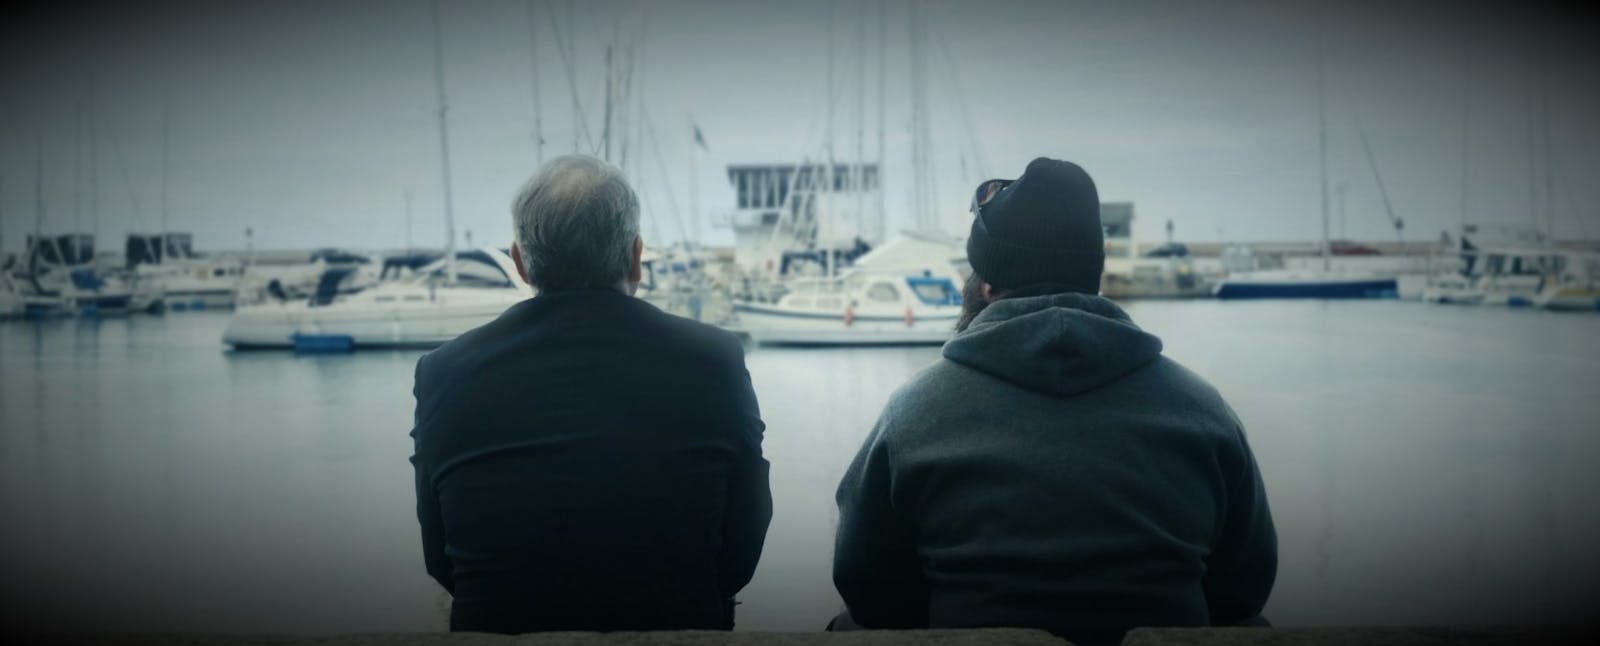 The Promenade – festivalframgångar för svensk kortfilm